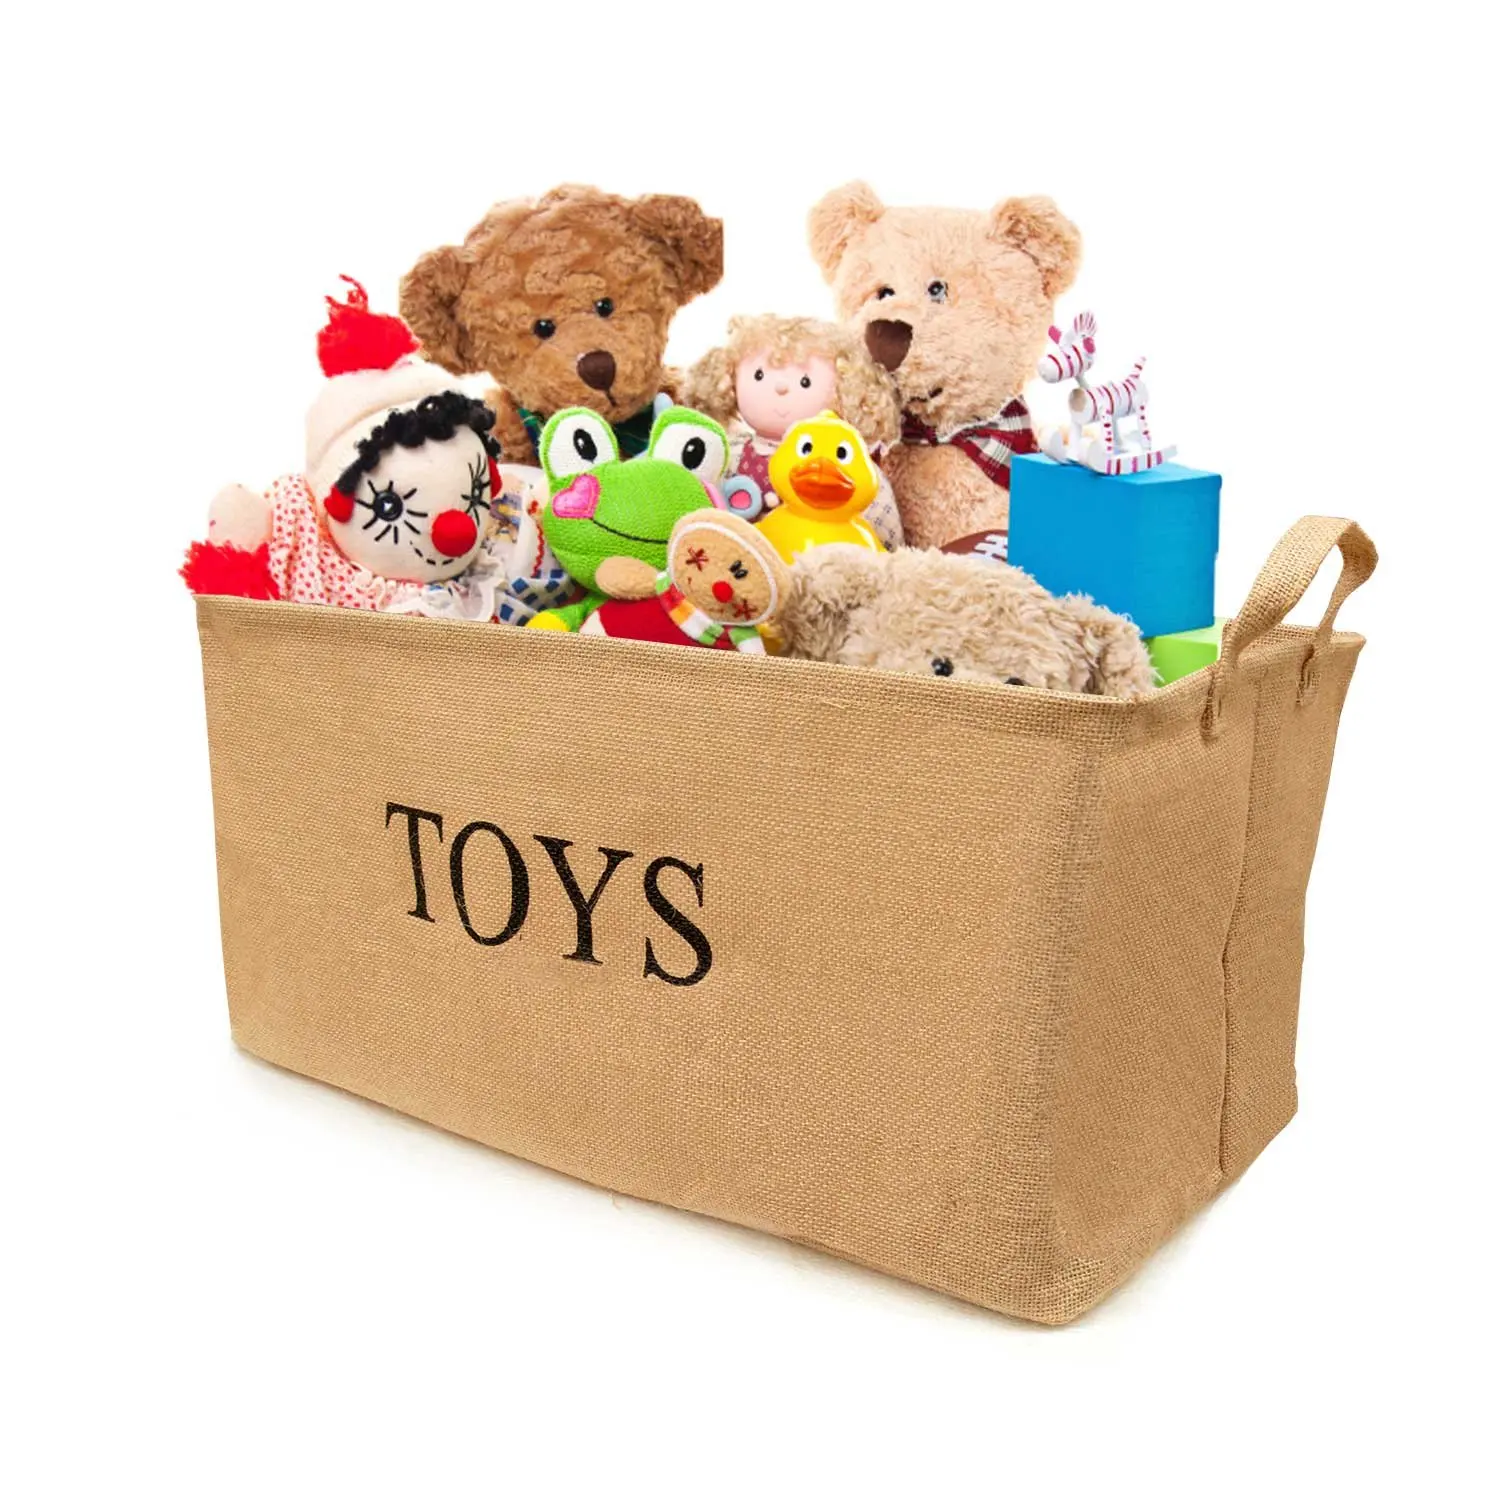 3 in the toy box. Игрушки в коробке. Toy Box (игрушки). Коробка для игрушек. Бокс с мягкими игрушками.